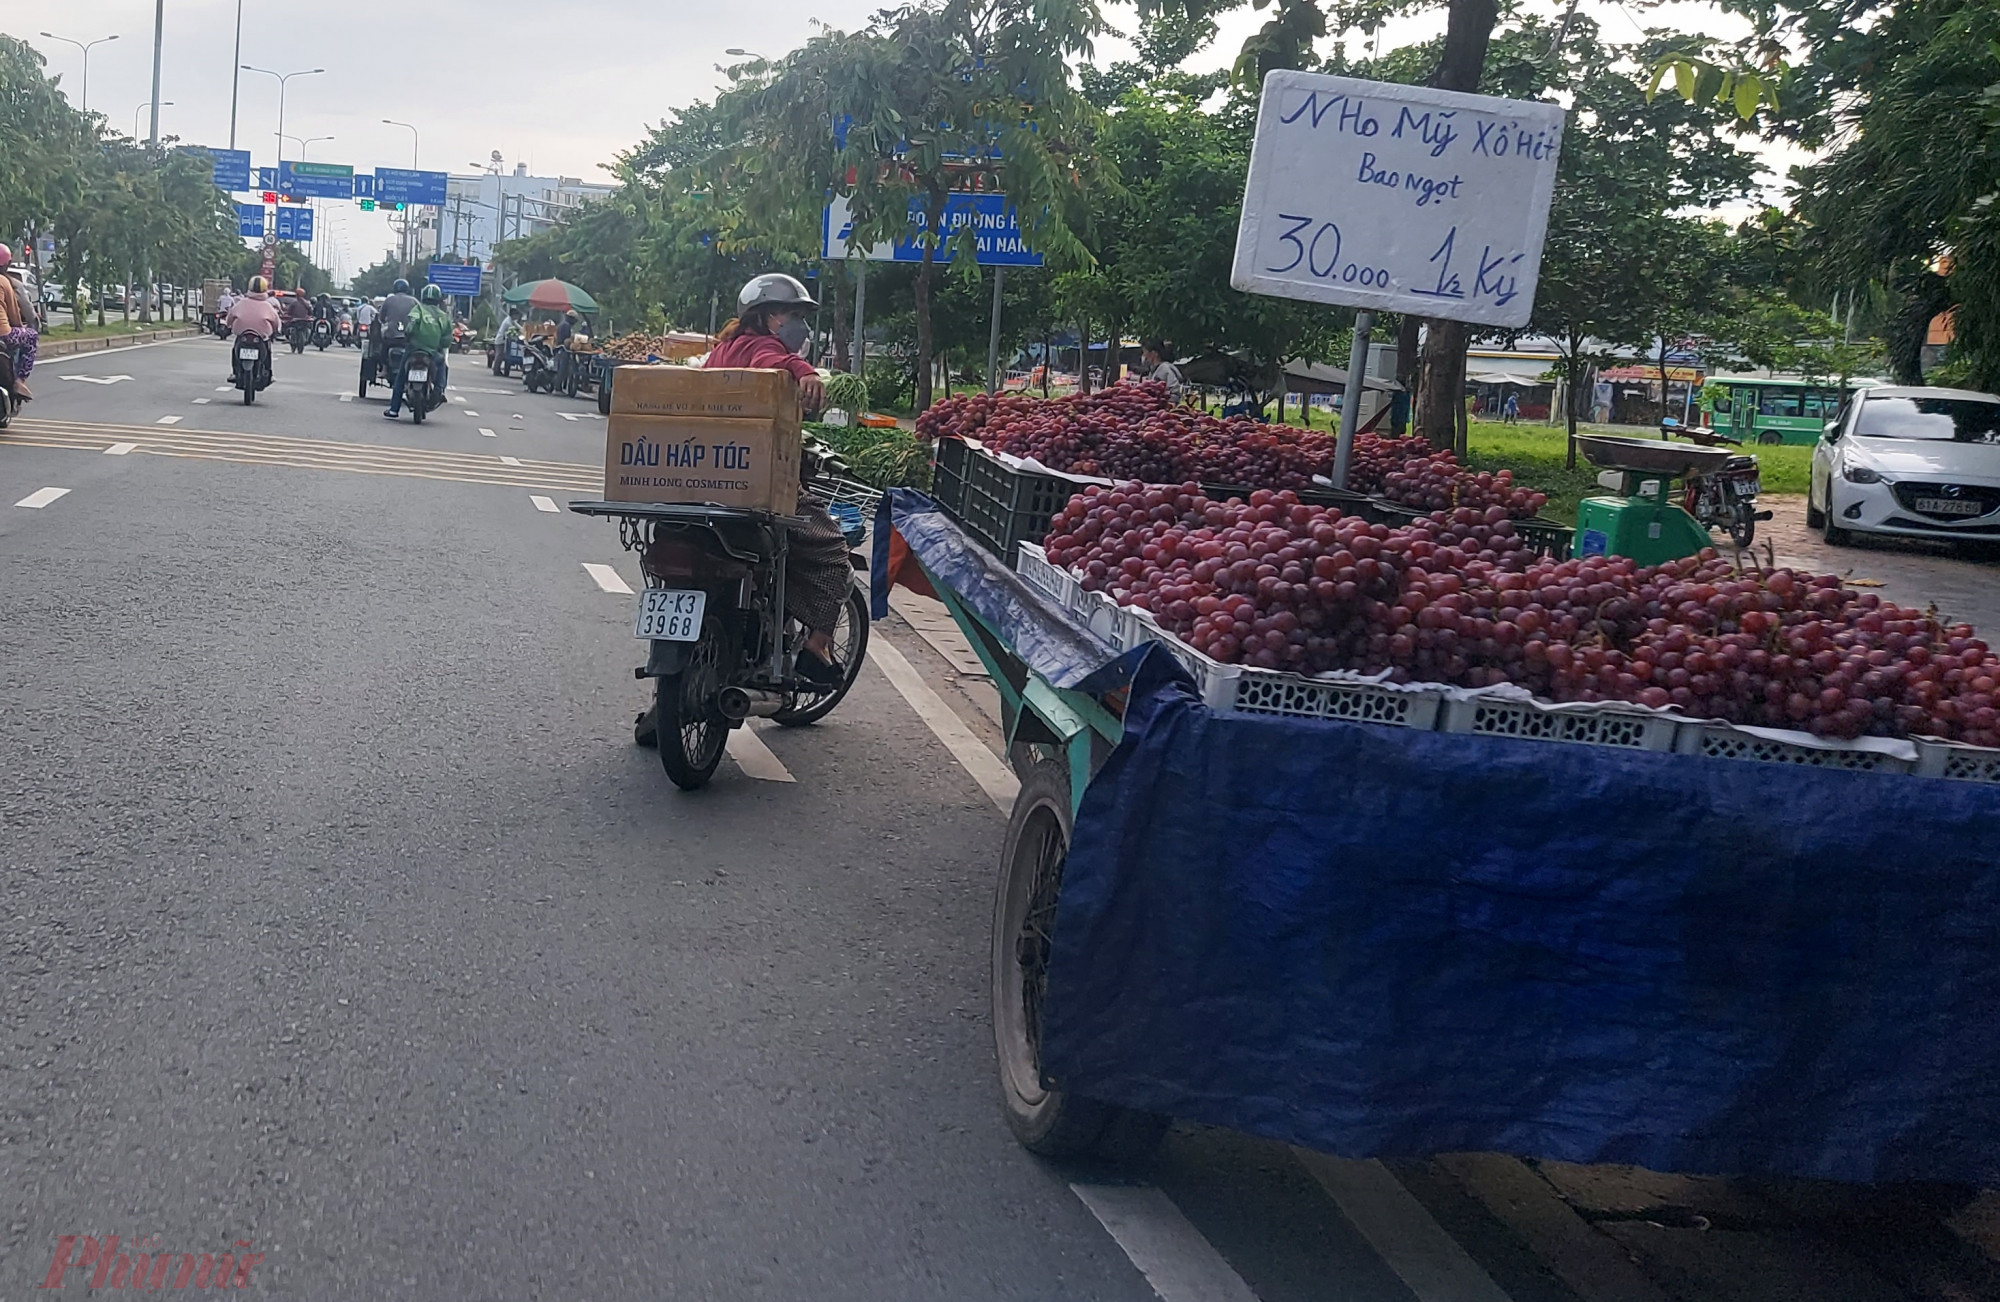 Không chỉ lần chiếm đường An Dương Vương, nhiều người bán hàng còn tràn ra cả đại lộ Võ Văn Kiệt ở đoạn gần giao lộ hai tuyến đường này.